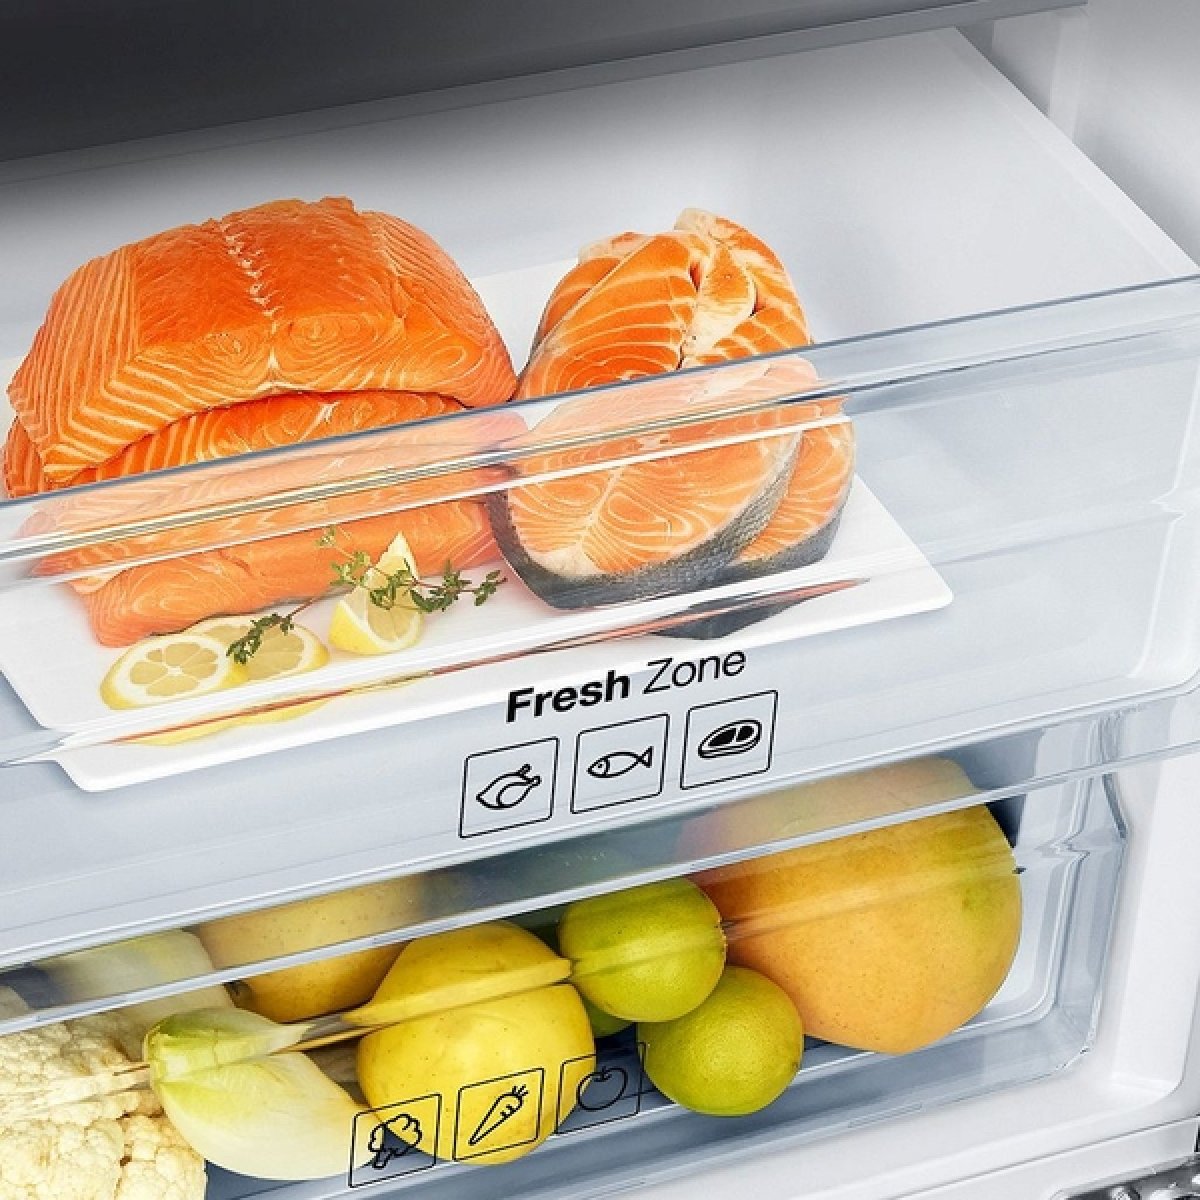 Fresh Zone в холодильнике что это. Атлант холодильник с Фреш зоной. Зона свежести в холодильнике что это и зачем. Тип зоны свежести (нулевой камеры). Зона свежести влажная